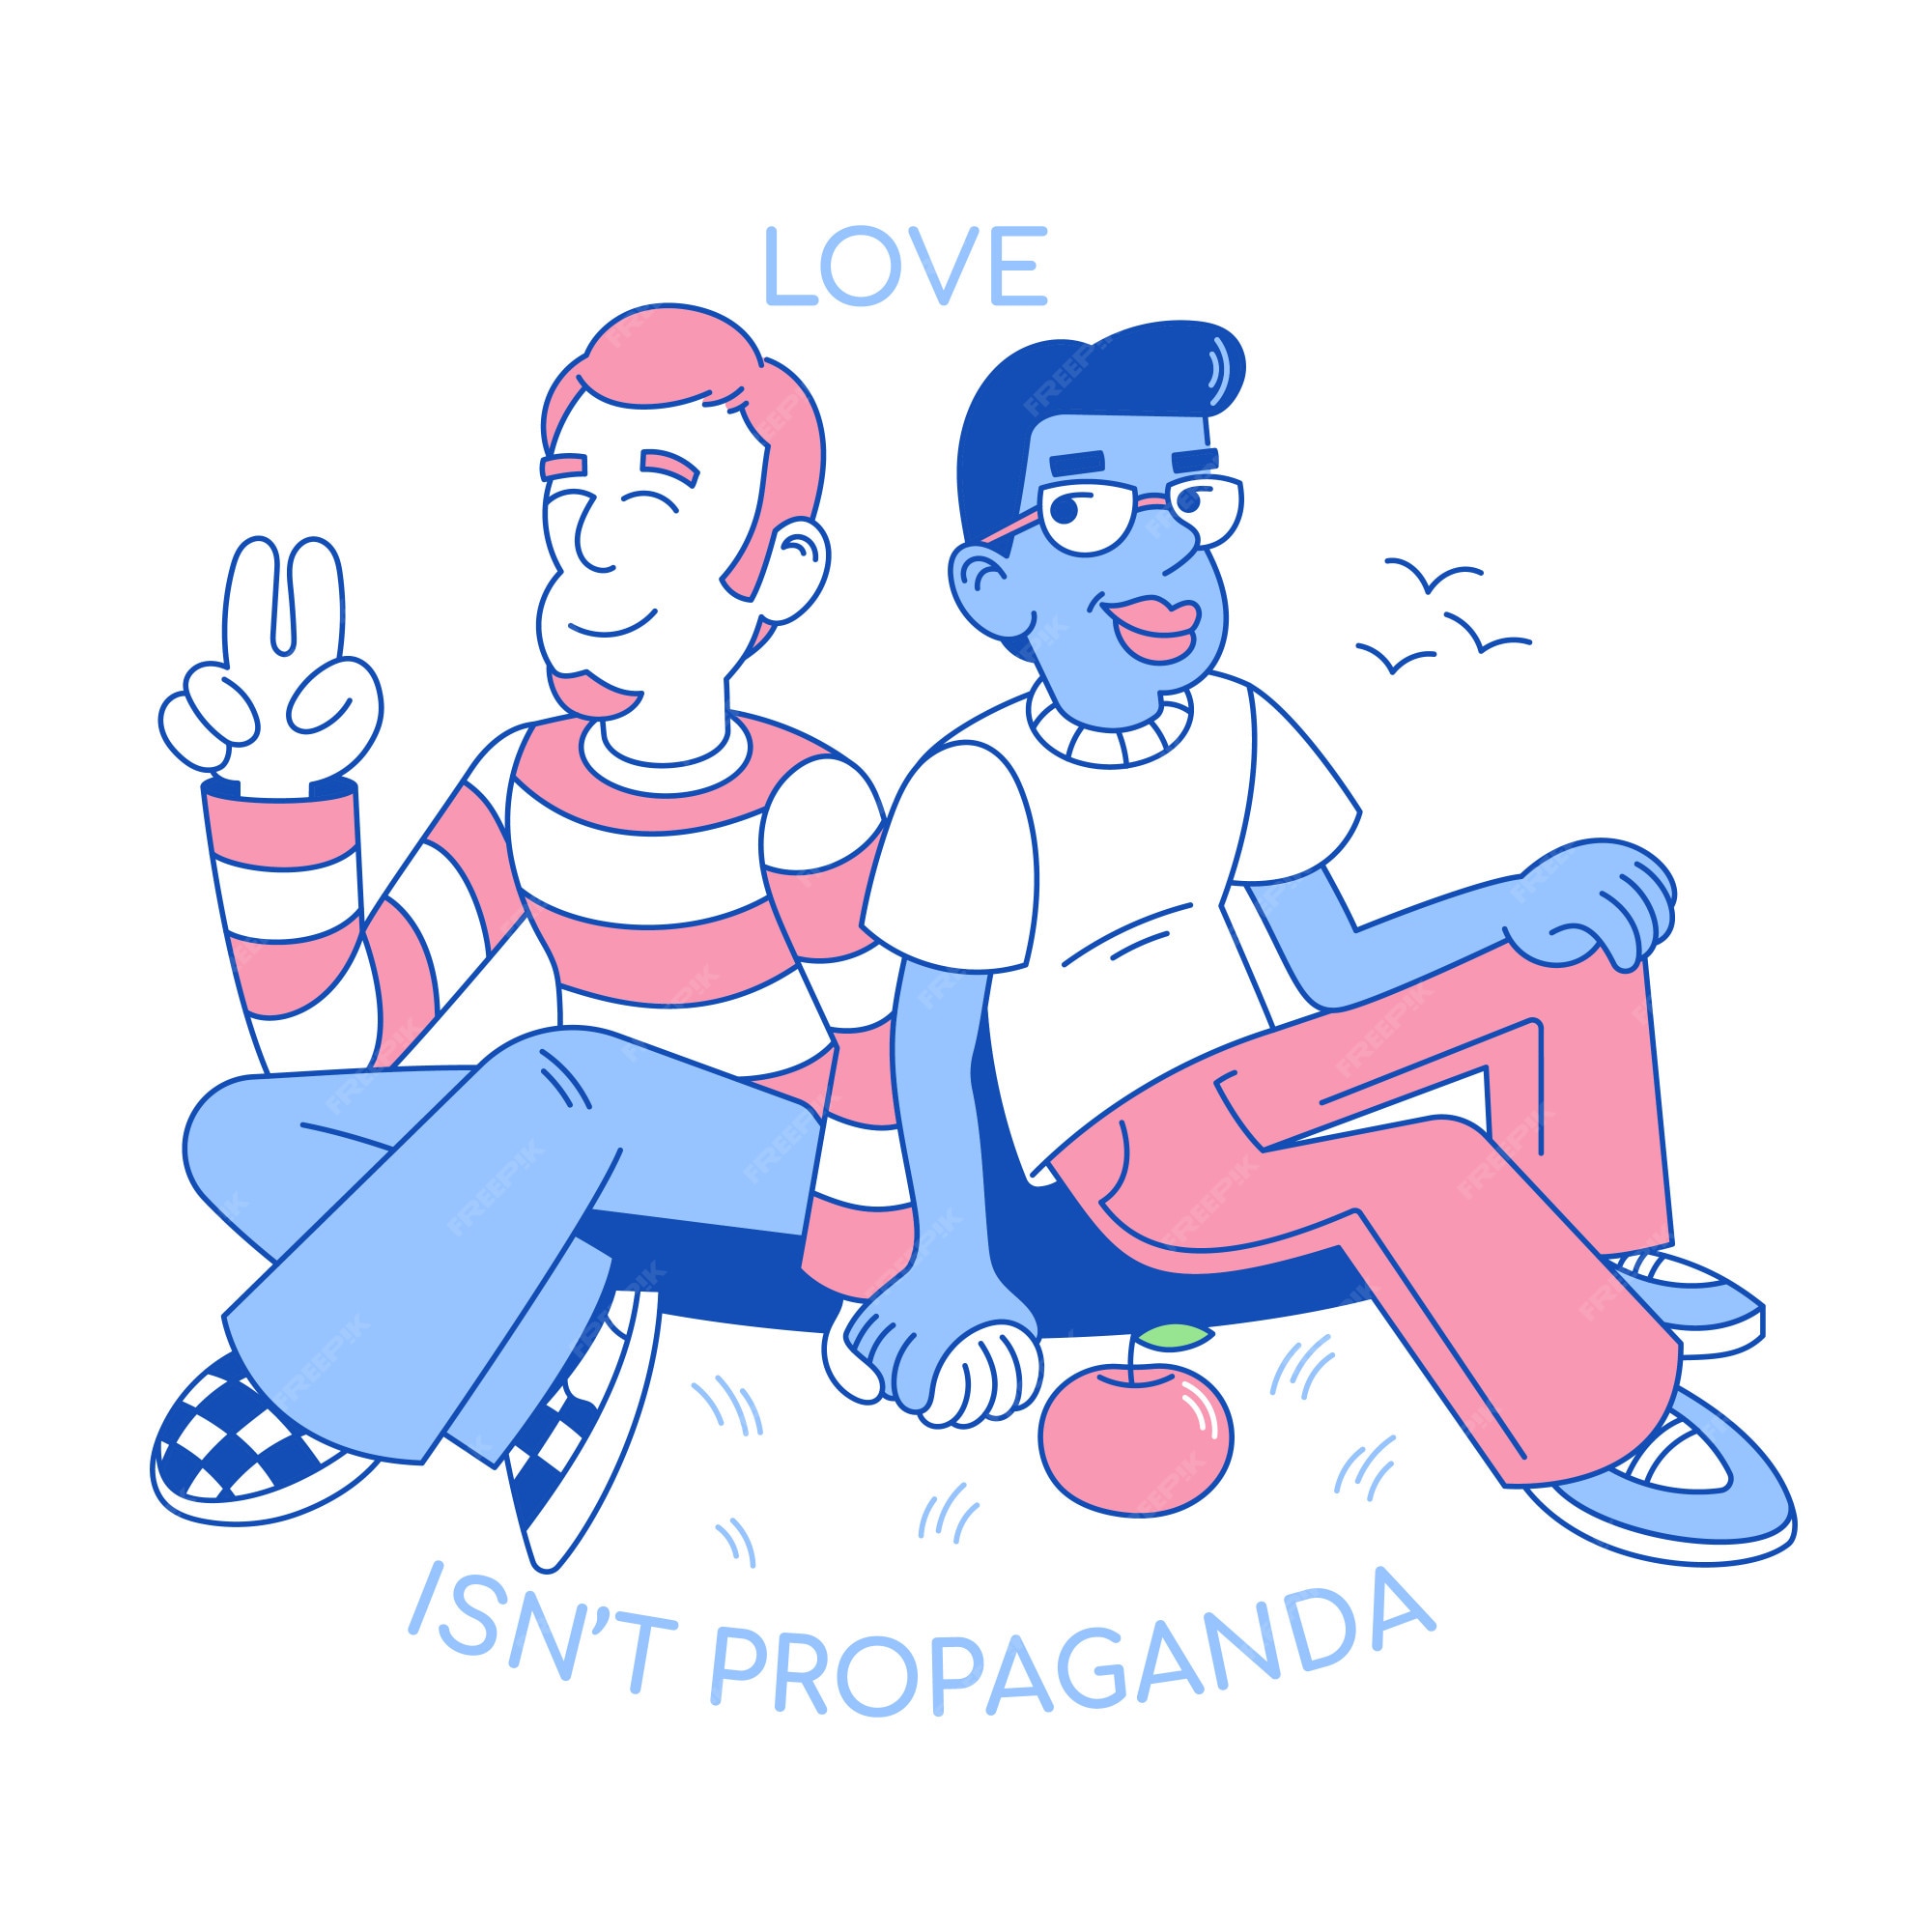 Personajes de dibujos animados en diseño plano, ilustración con dos hombres  lgbt de amor juntos, amistades homosexuales entre una sonrisa linda y  muchachos gays felices. | Vector Premium